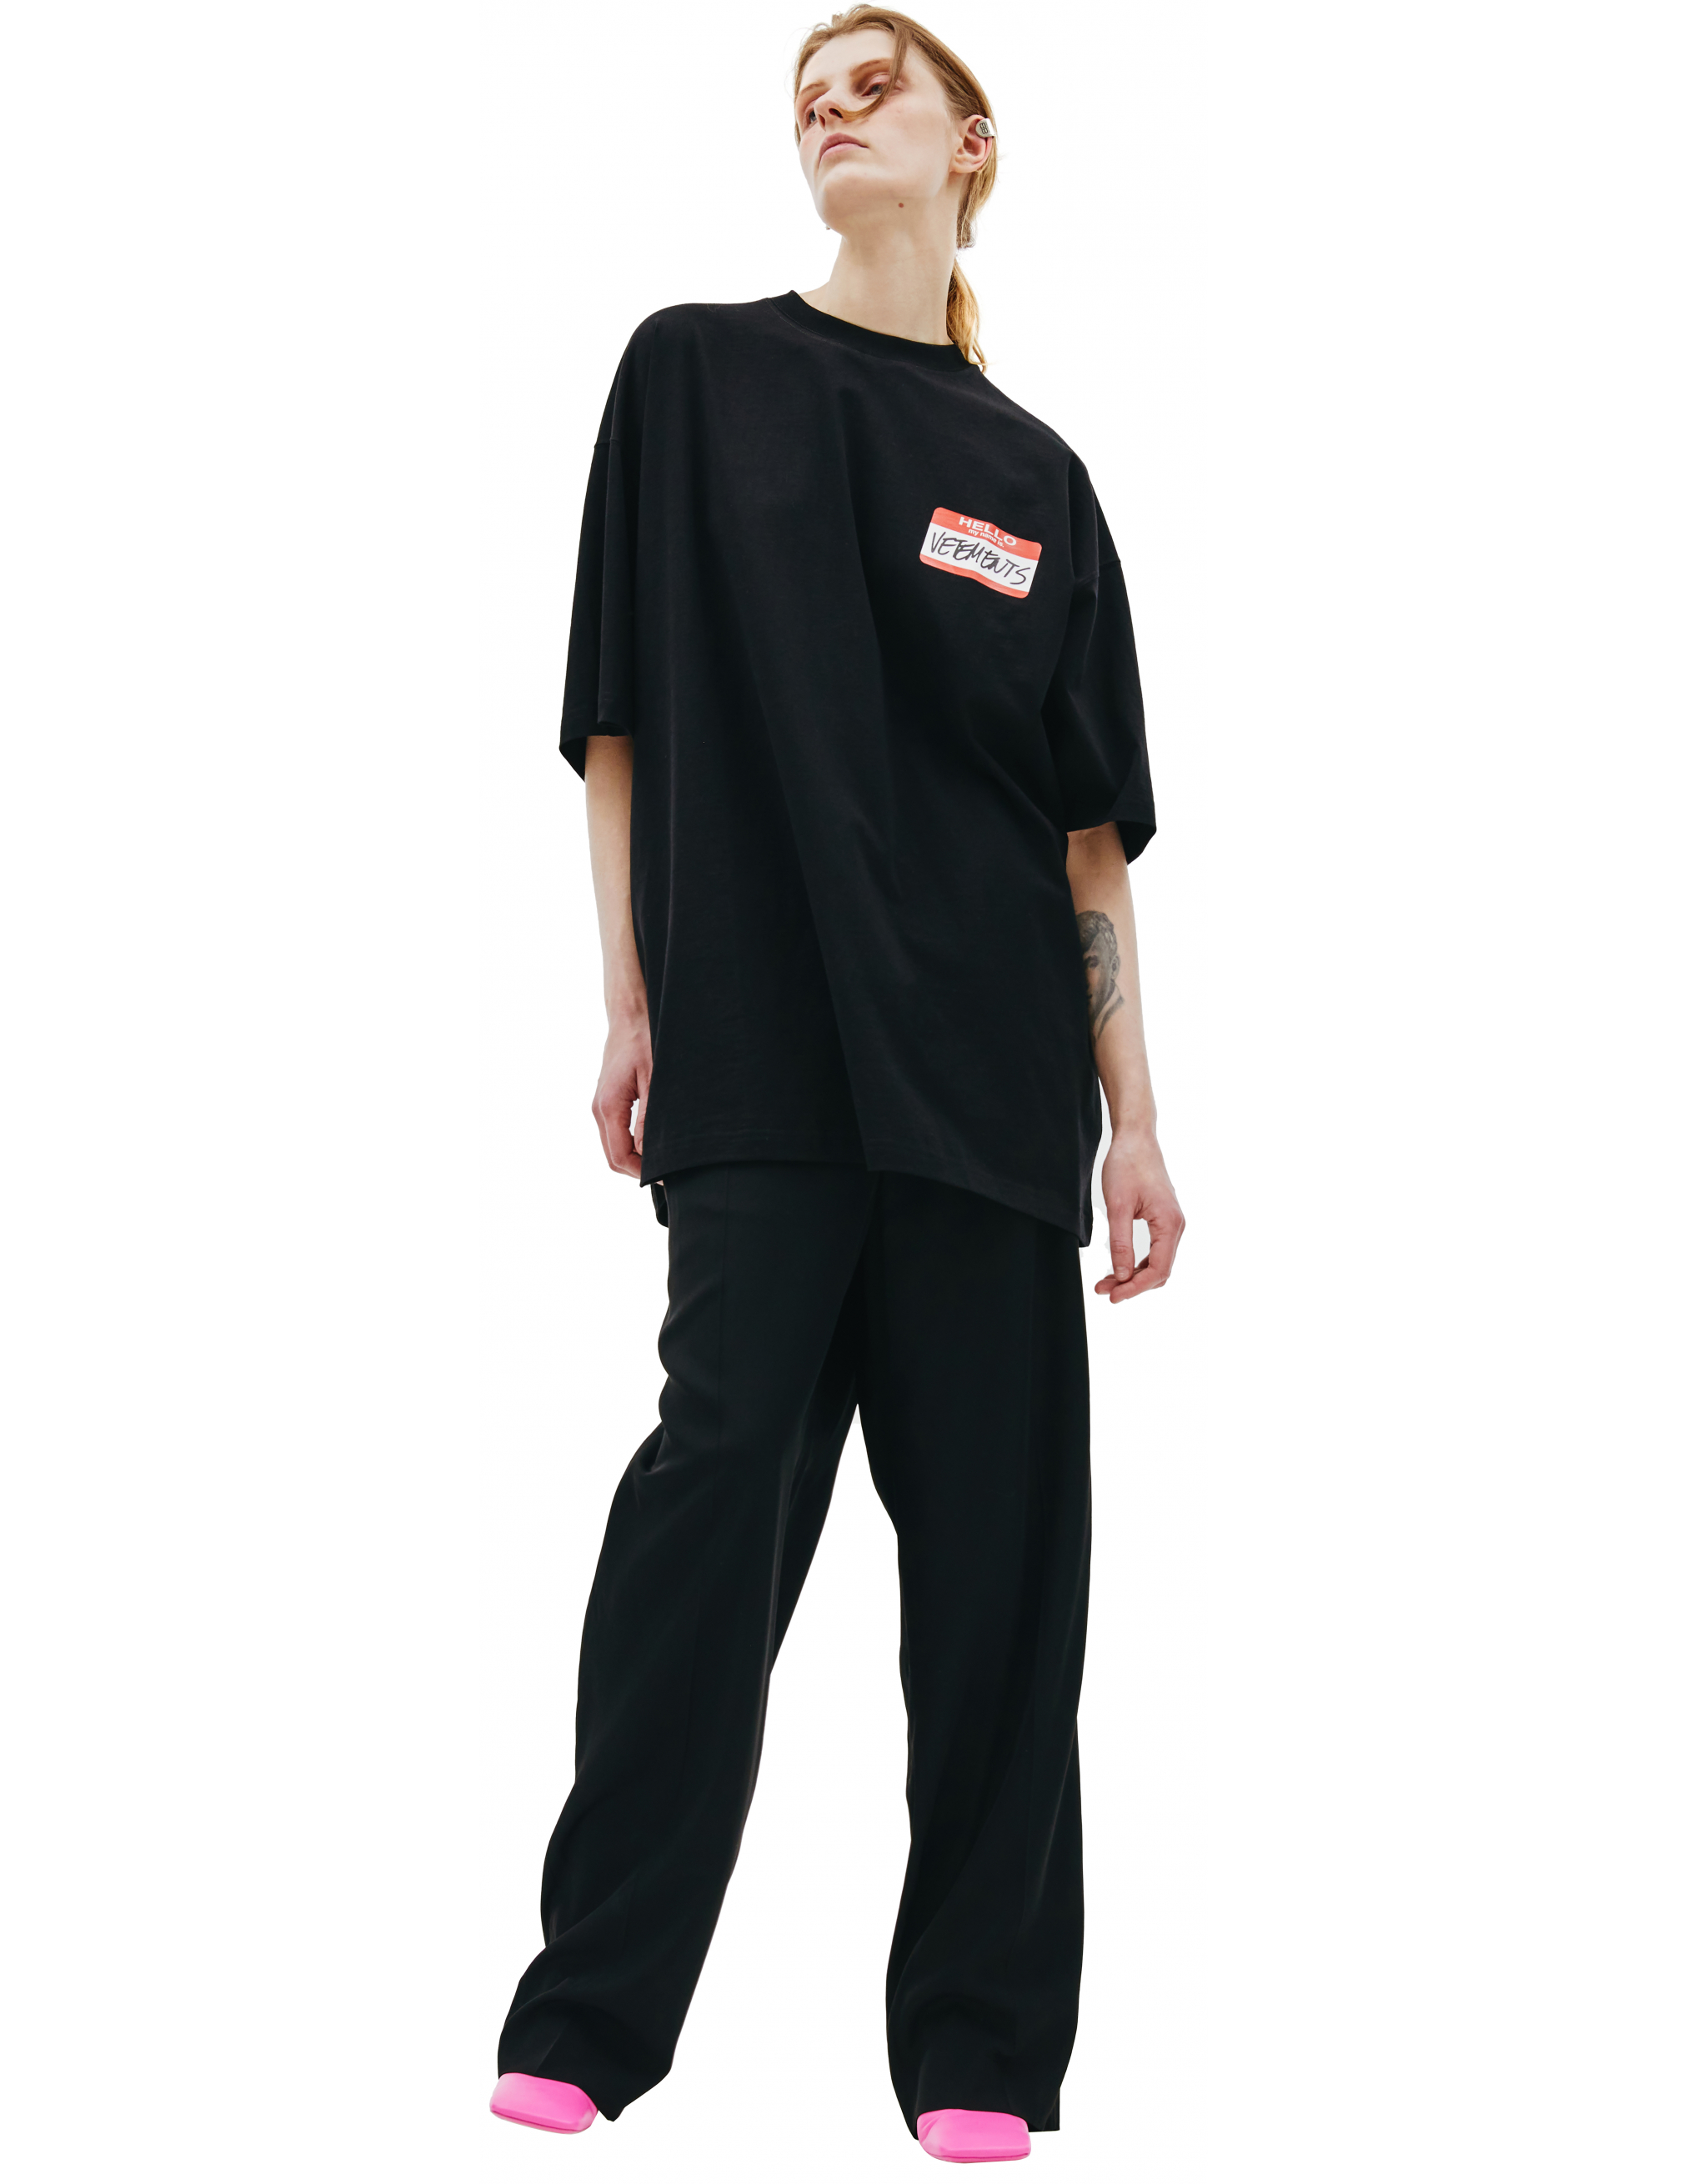 Черная футболка с патчем VETEMENTS UE52TR140B/1602, размер M;S;XS;XL;L